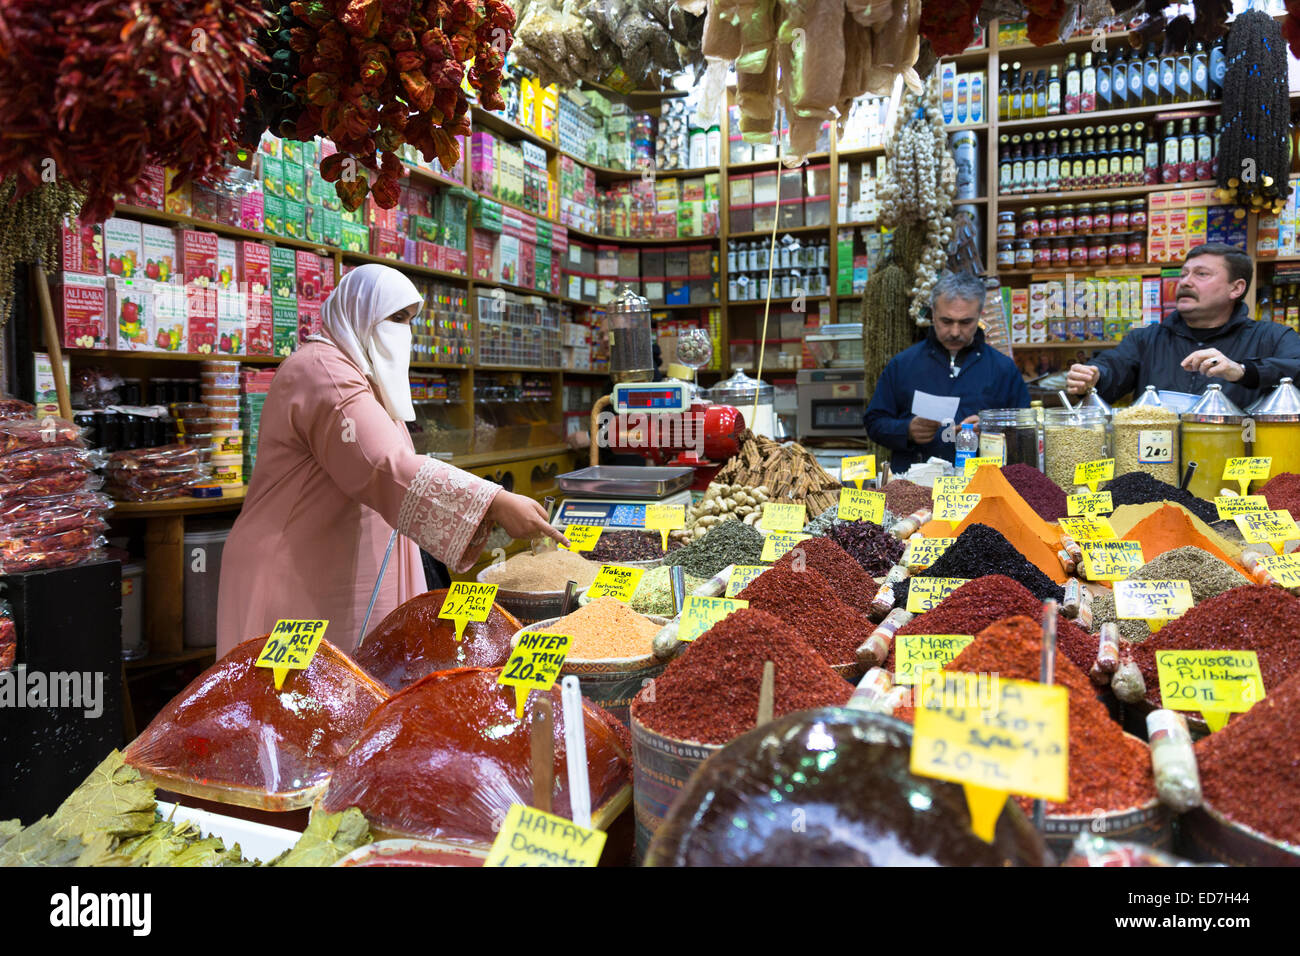 Woman shopper portant voile musulman achète épices Misir Carsisi au bazar égyptien de l'alimentation et le marché aux épices, Istanbul, Turquie Banque D'Images